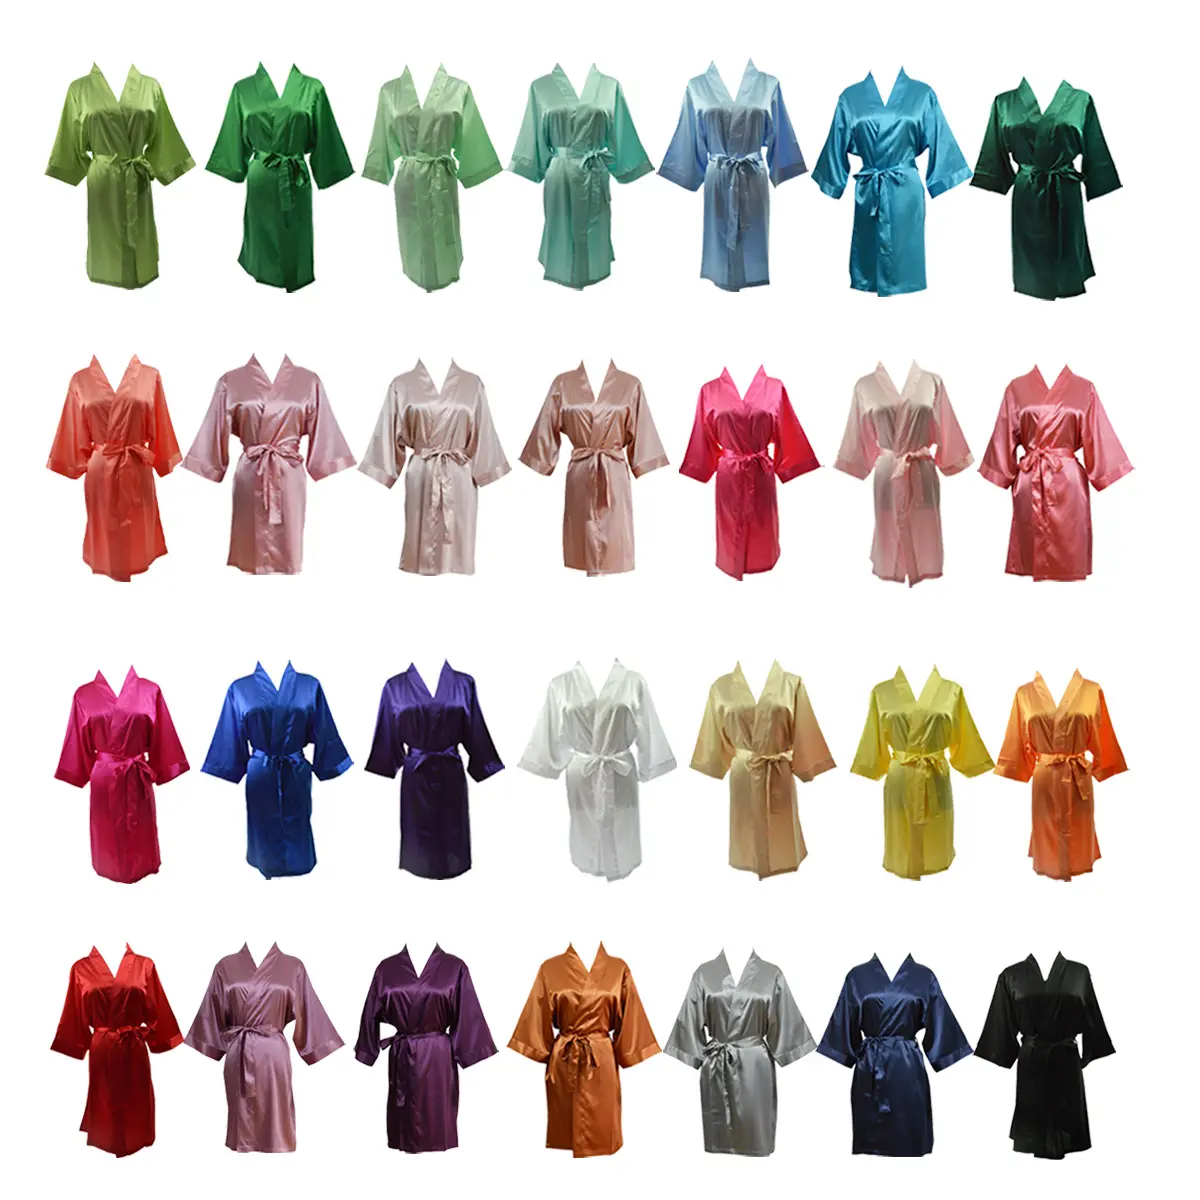 ग्रीन tex 133 रंग दुल्हन बागे किमोनो रेशम साटन महिलाओं शादी वर सो पोशाक